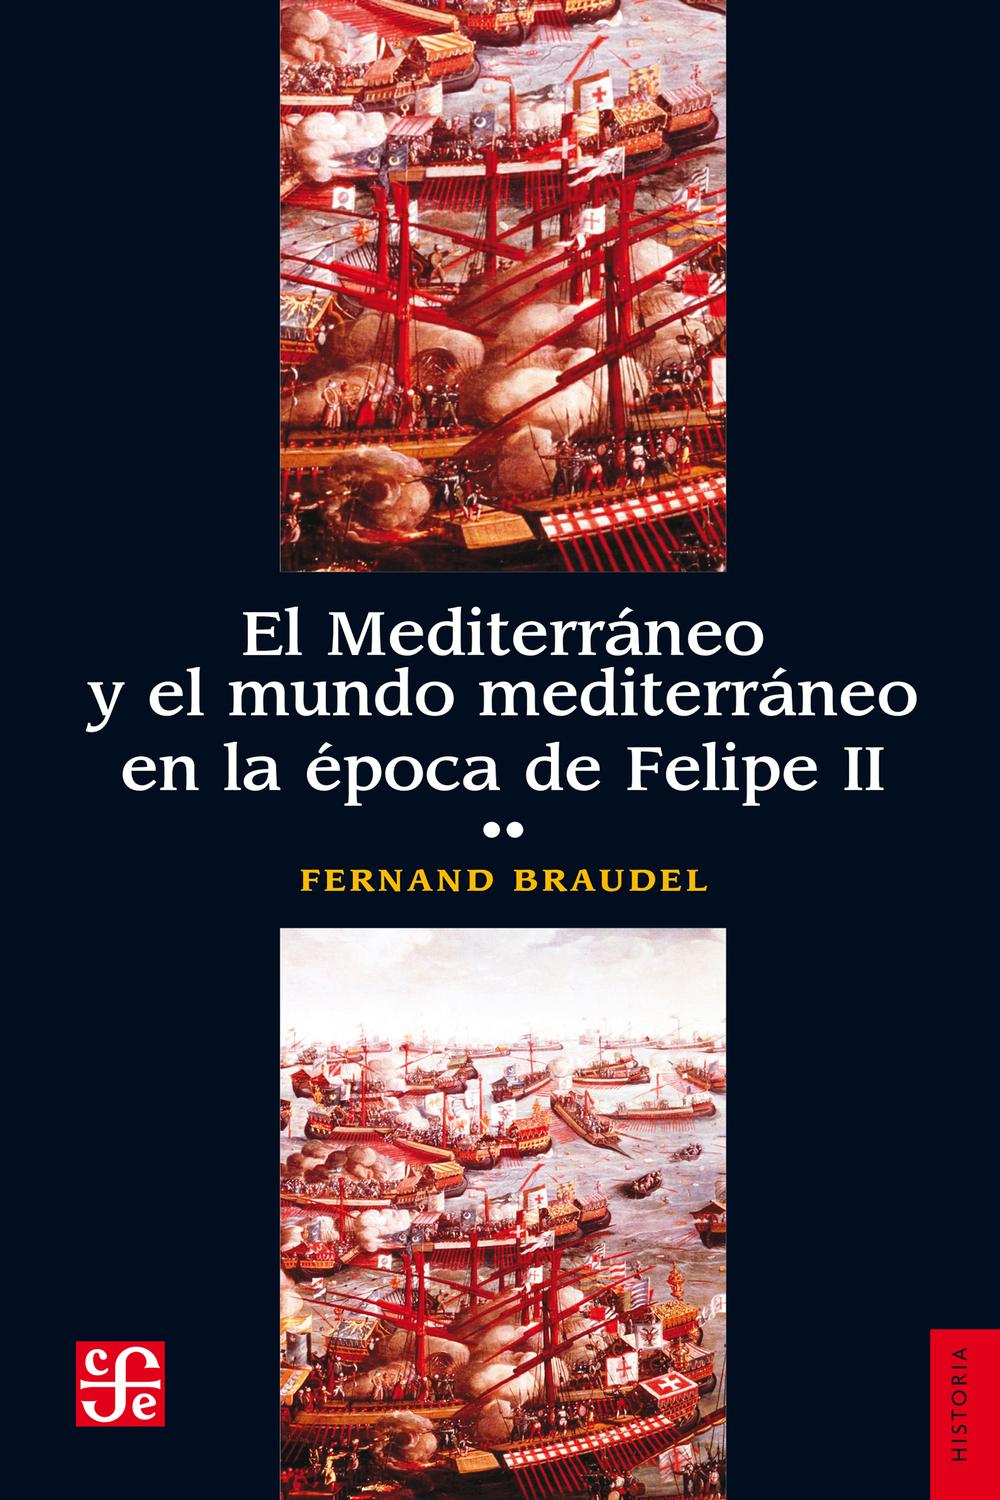 El Mediterráneo y el mundo mediterráneo en la época de Felipe II. Tomo 2 - Fernand Braudel